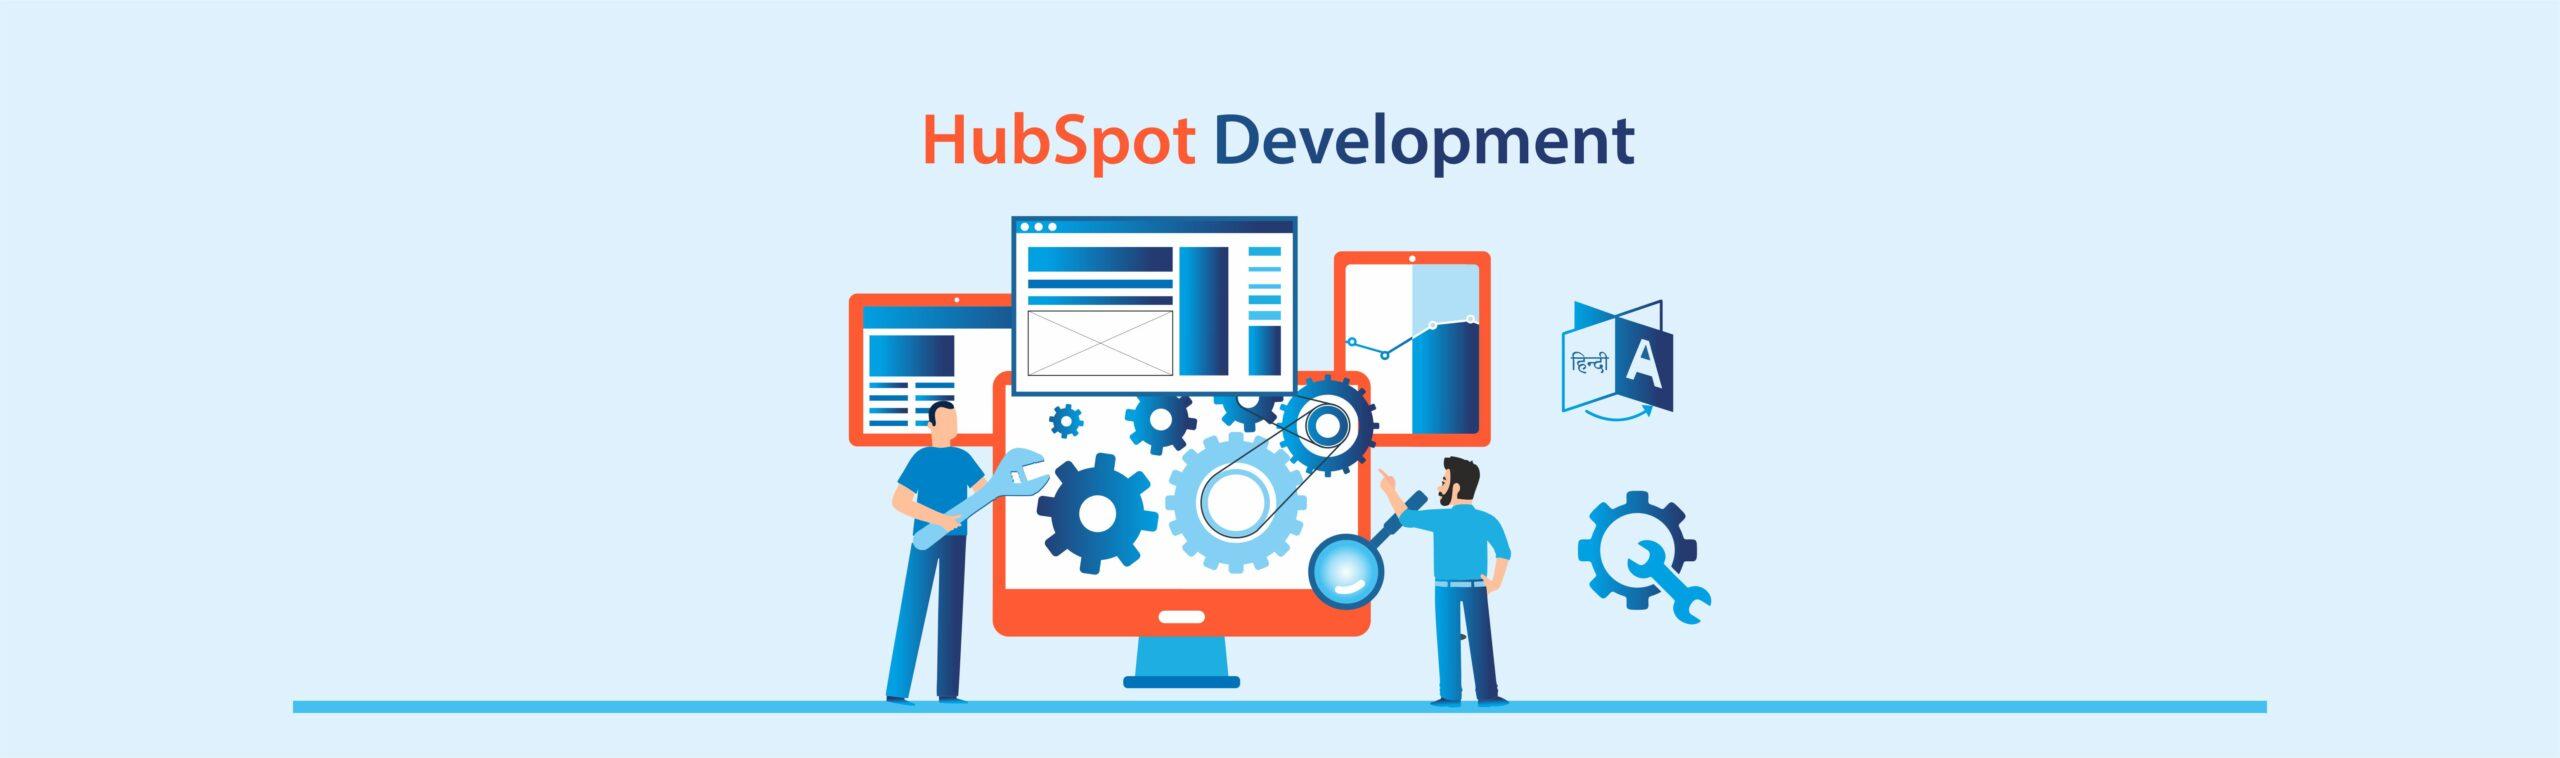 Hubspot development